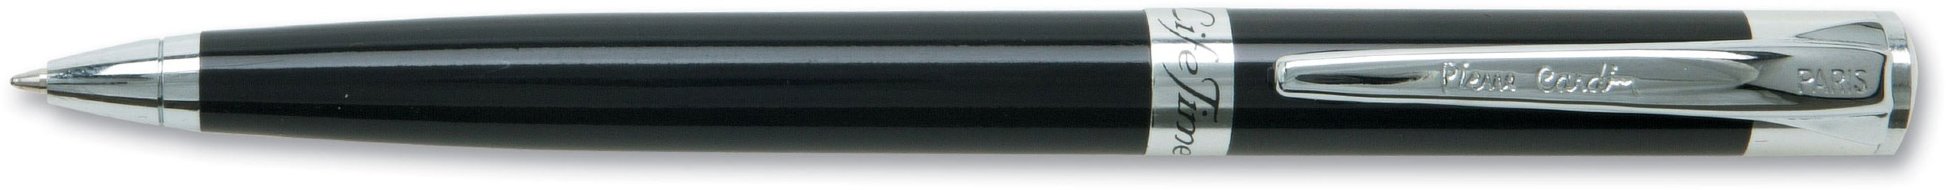 Шариковая ручка Pierre Cardin Gamme черный лак, хром